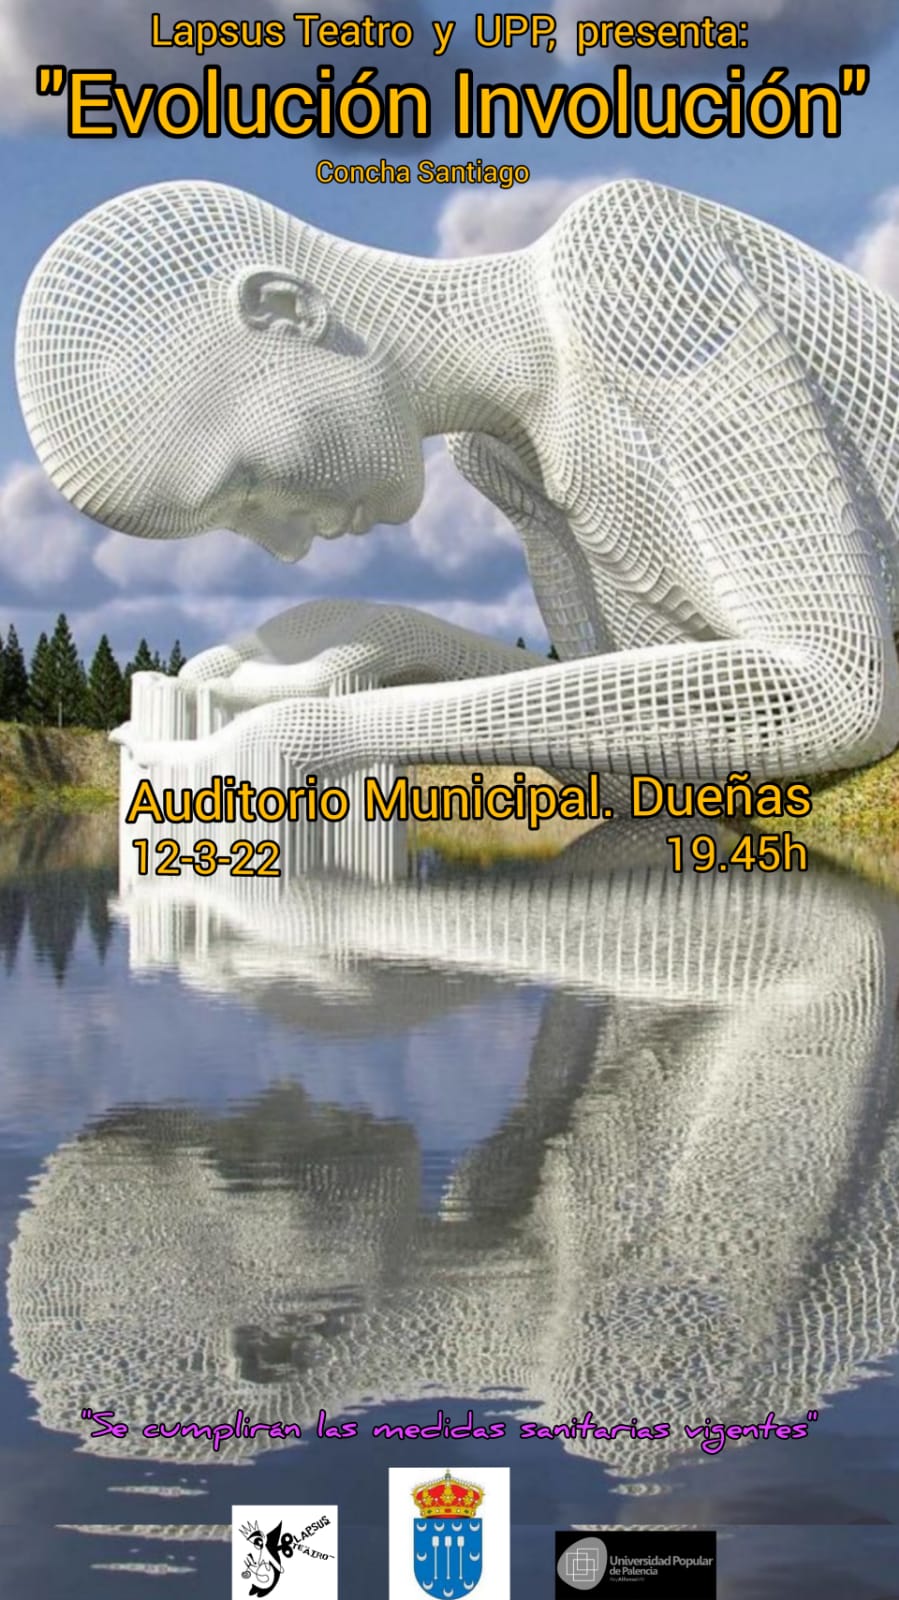 12 de marzo de 2022: Teatro en Dueñas, Auditorio Municipal a las 19:45 hs.